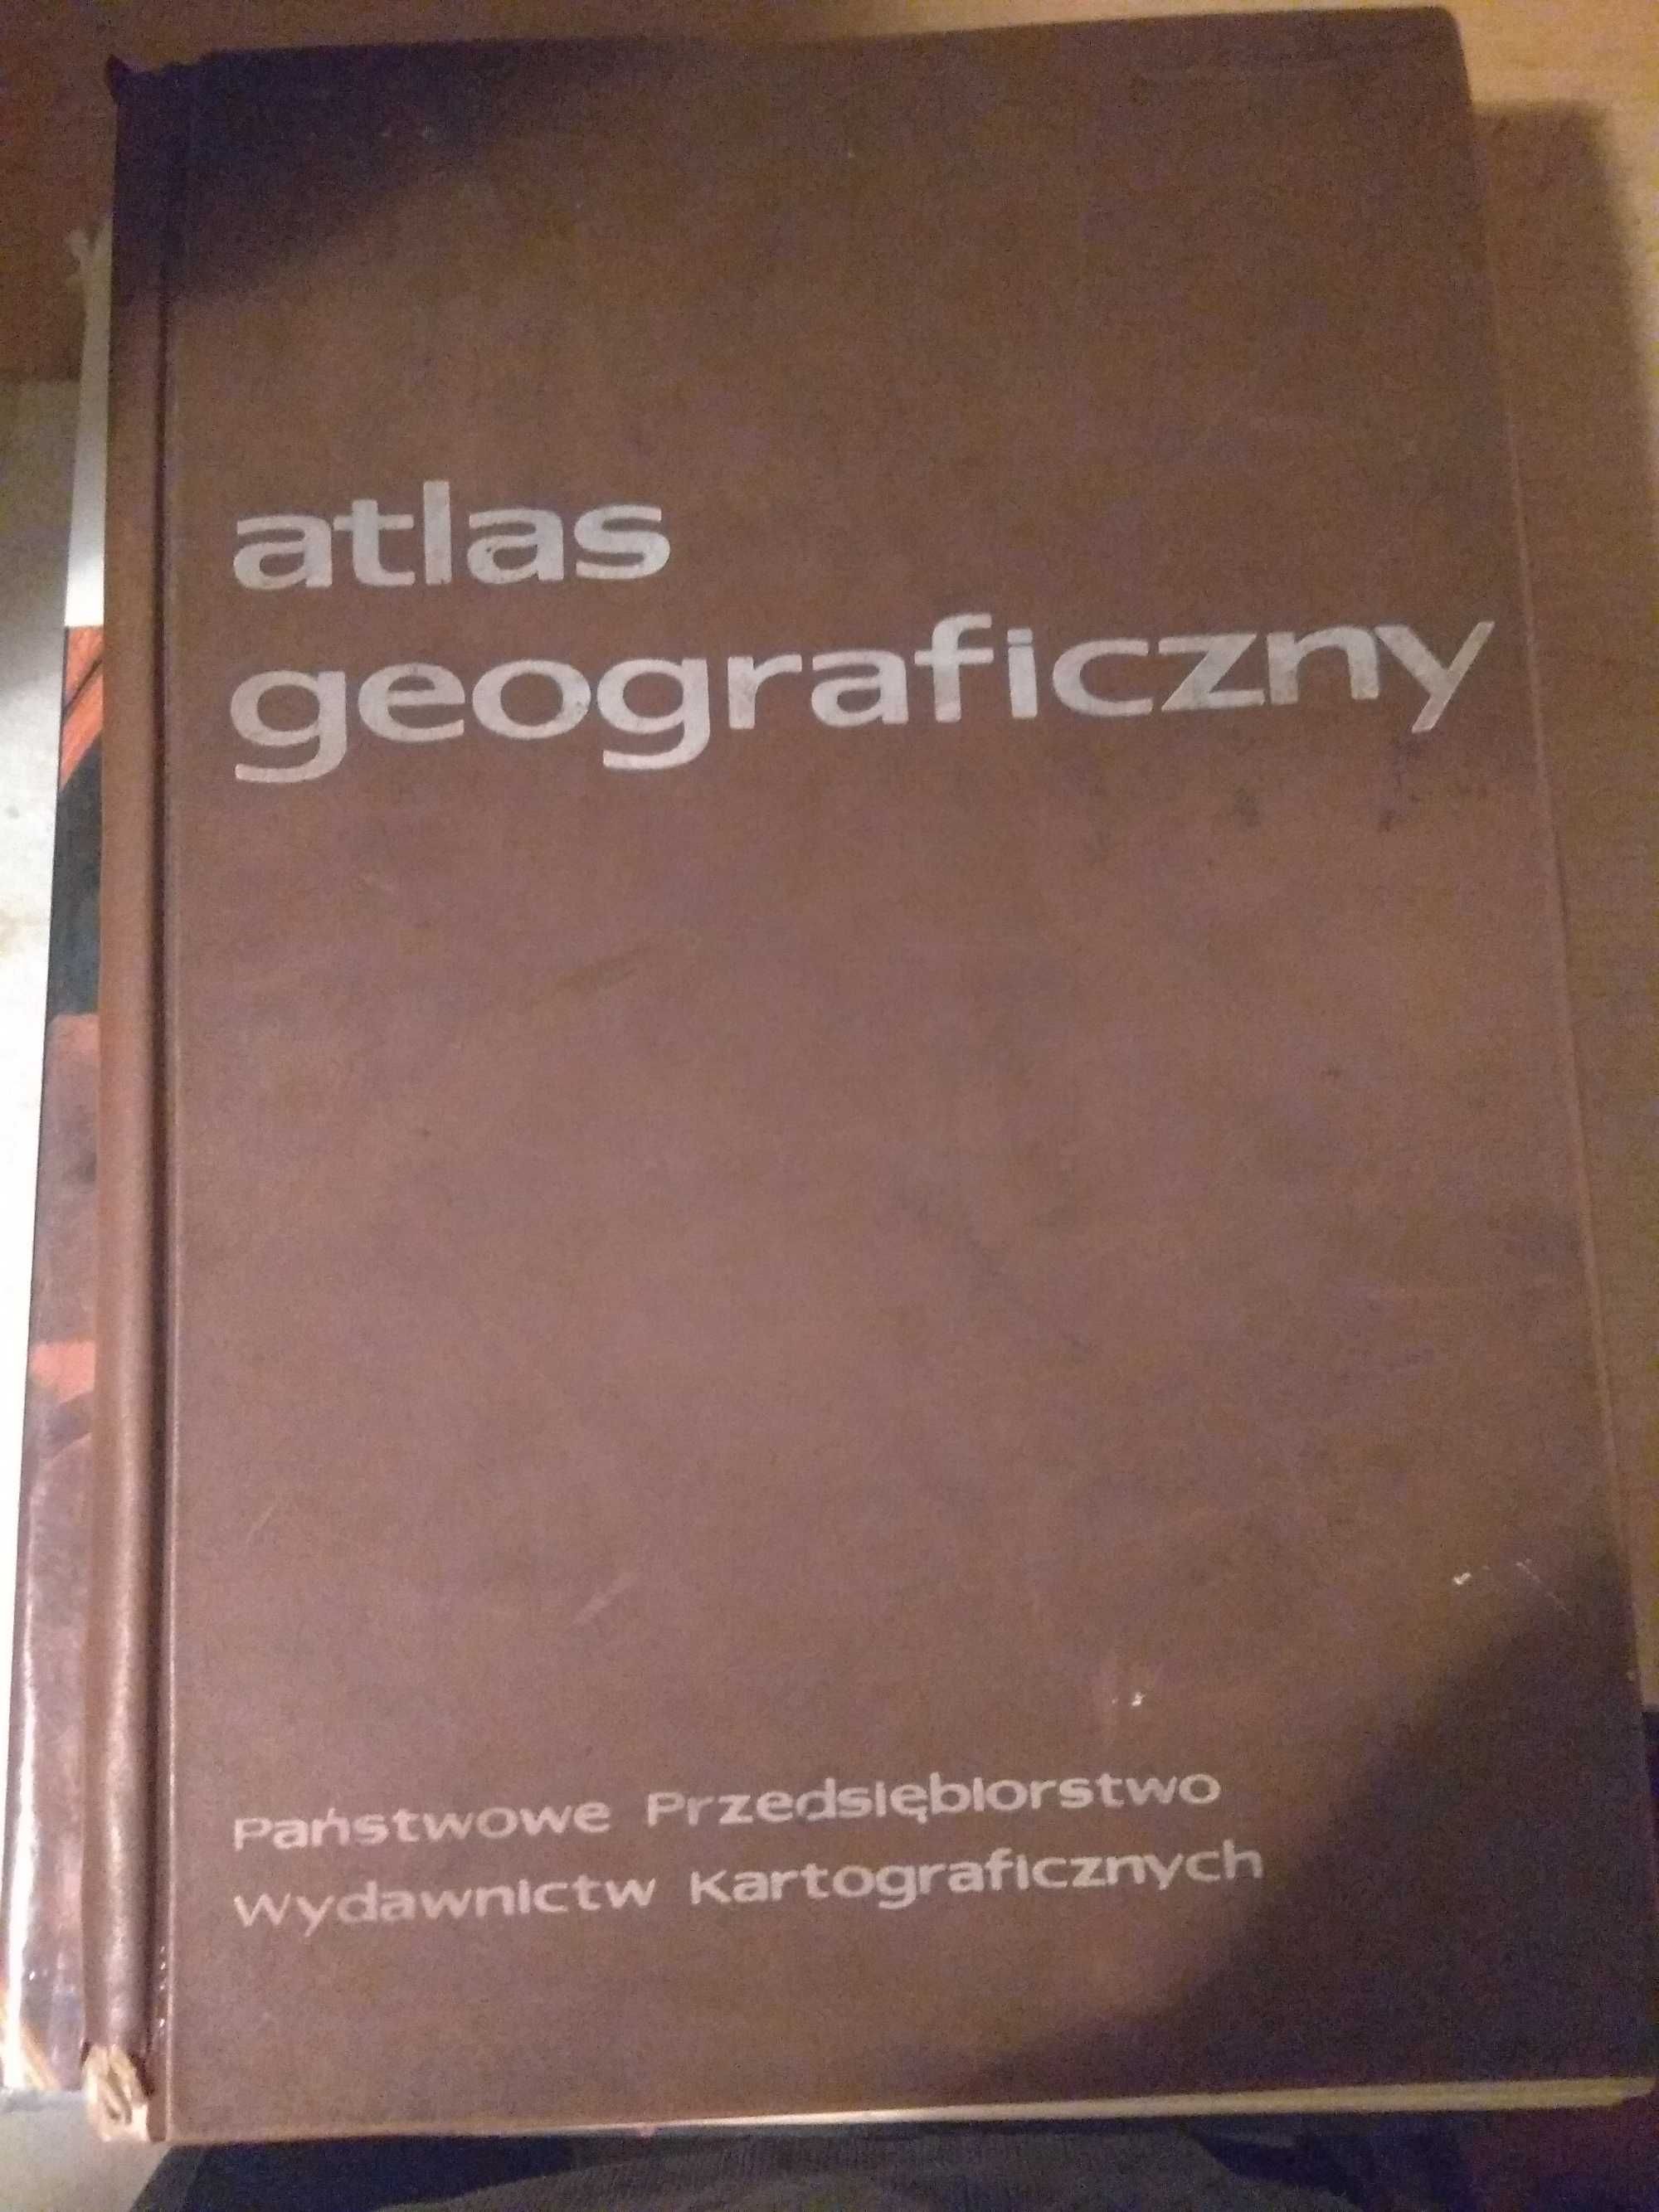 Atlas geograficzny Wydawnictwo PPWK 1971